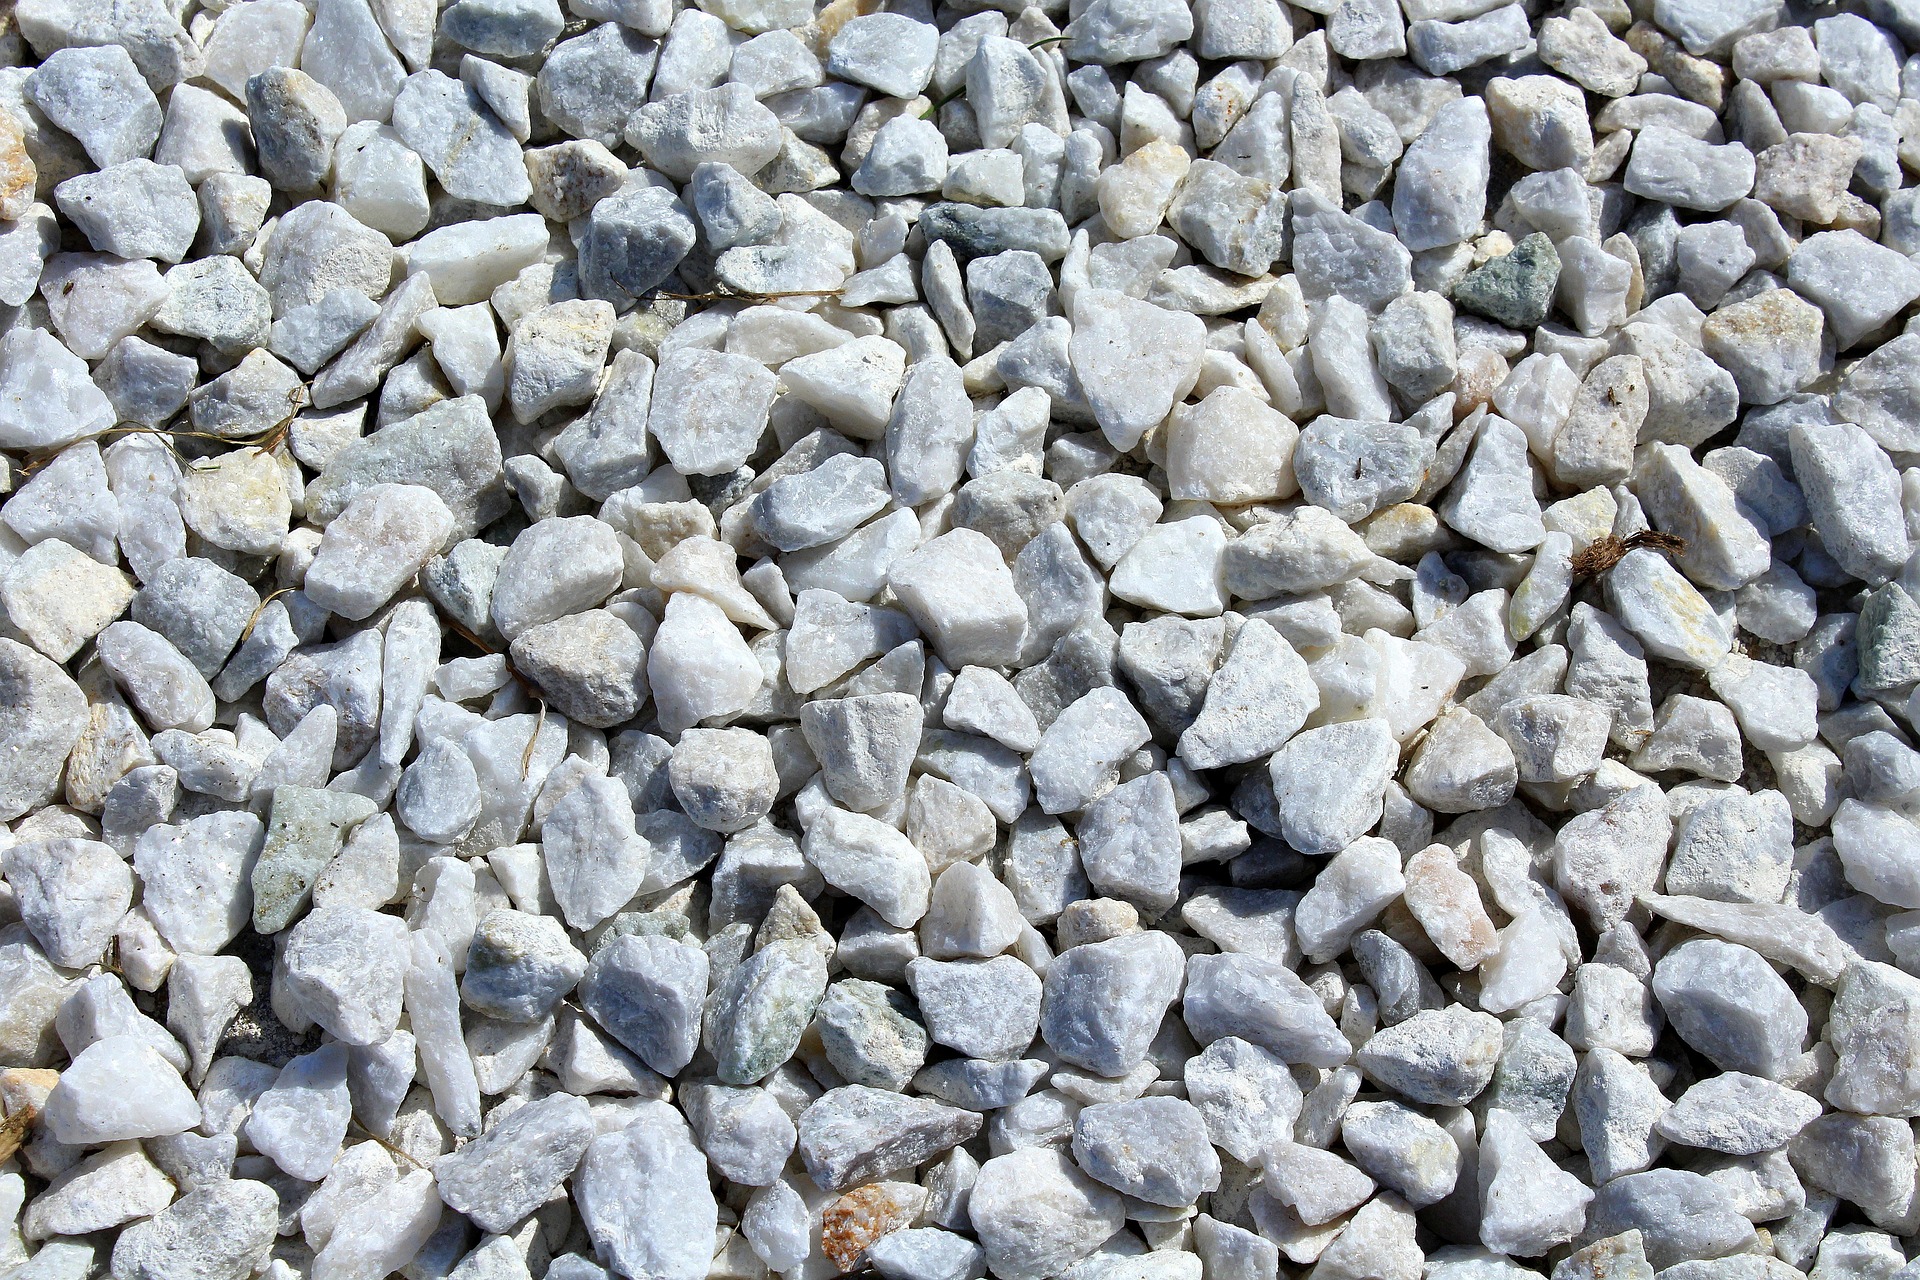 Kamienie, tłuczeń, źródło: Pixabay